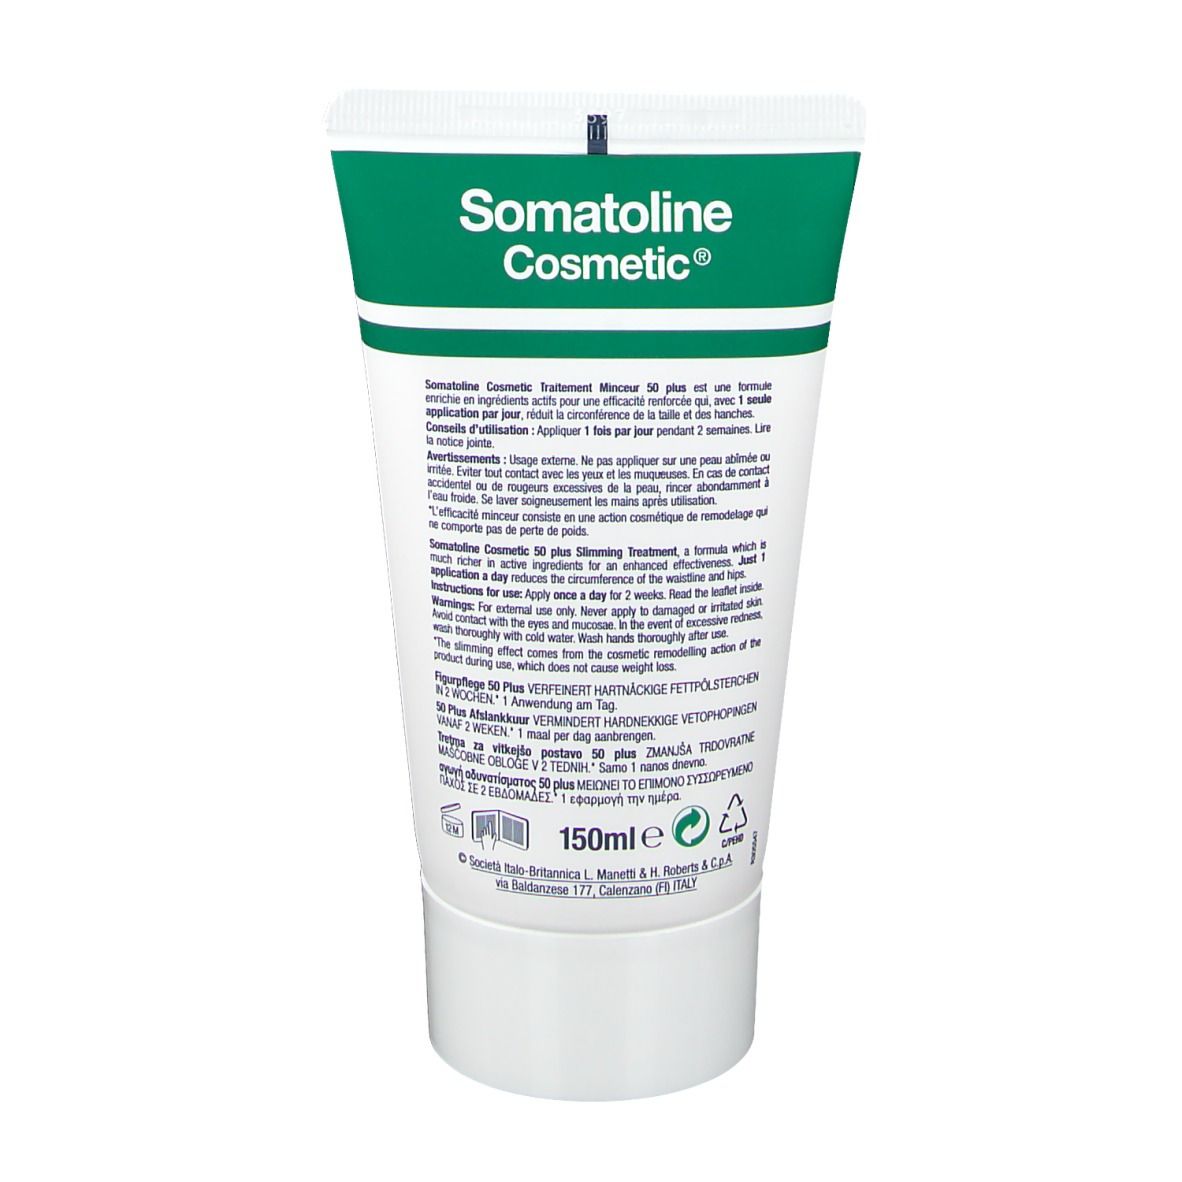 Somatoline Cosmetic® Figurpflege 50 Plus